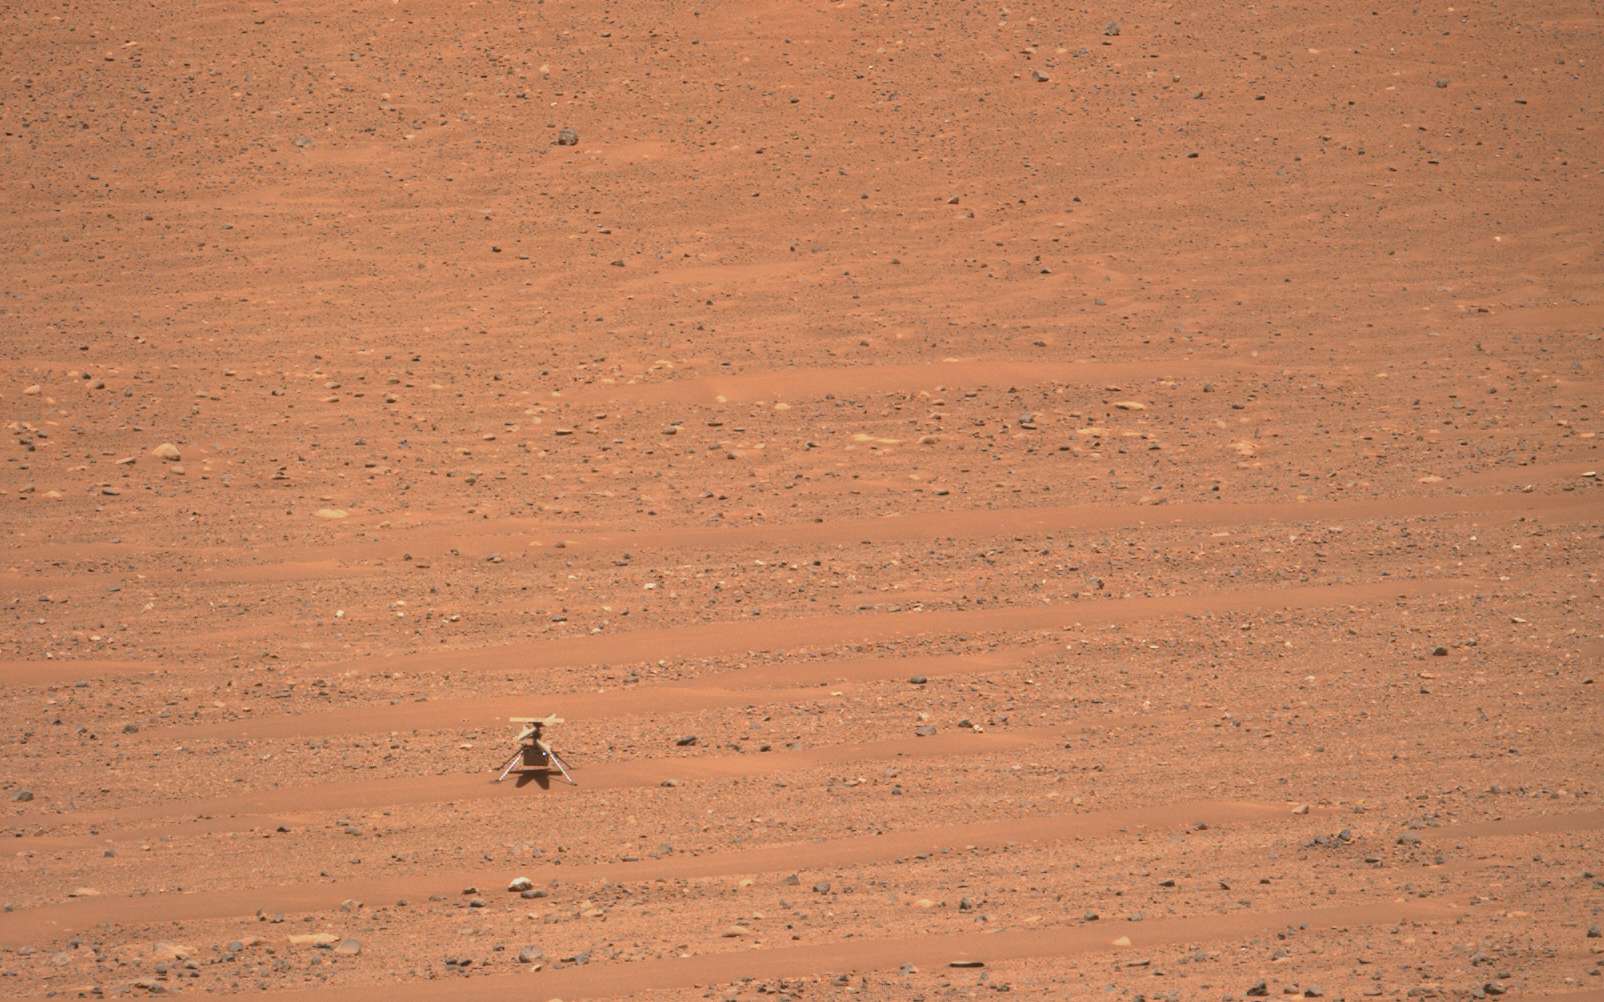 Mars : des images inoubliables du drone Ingenuity prises par Perseverance